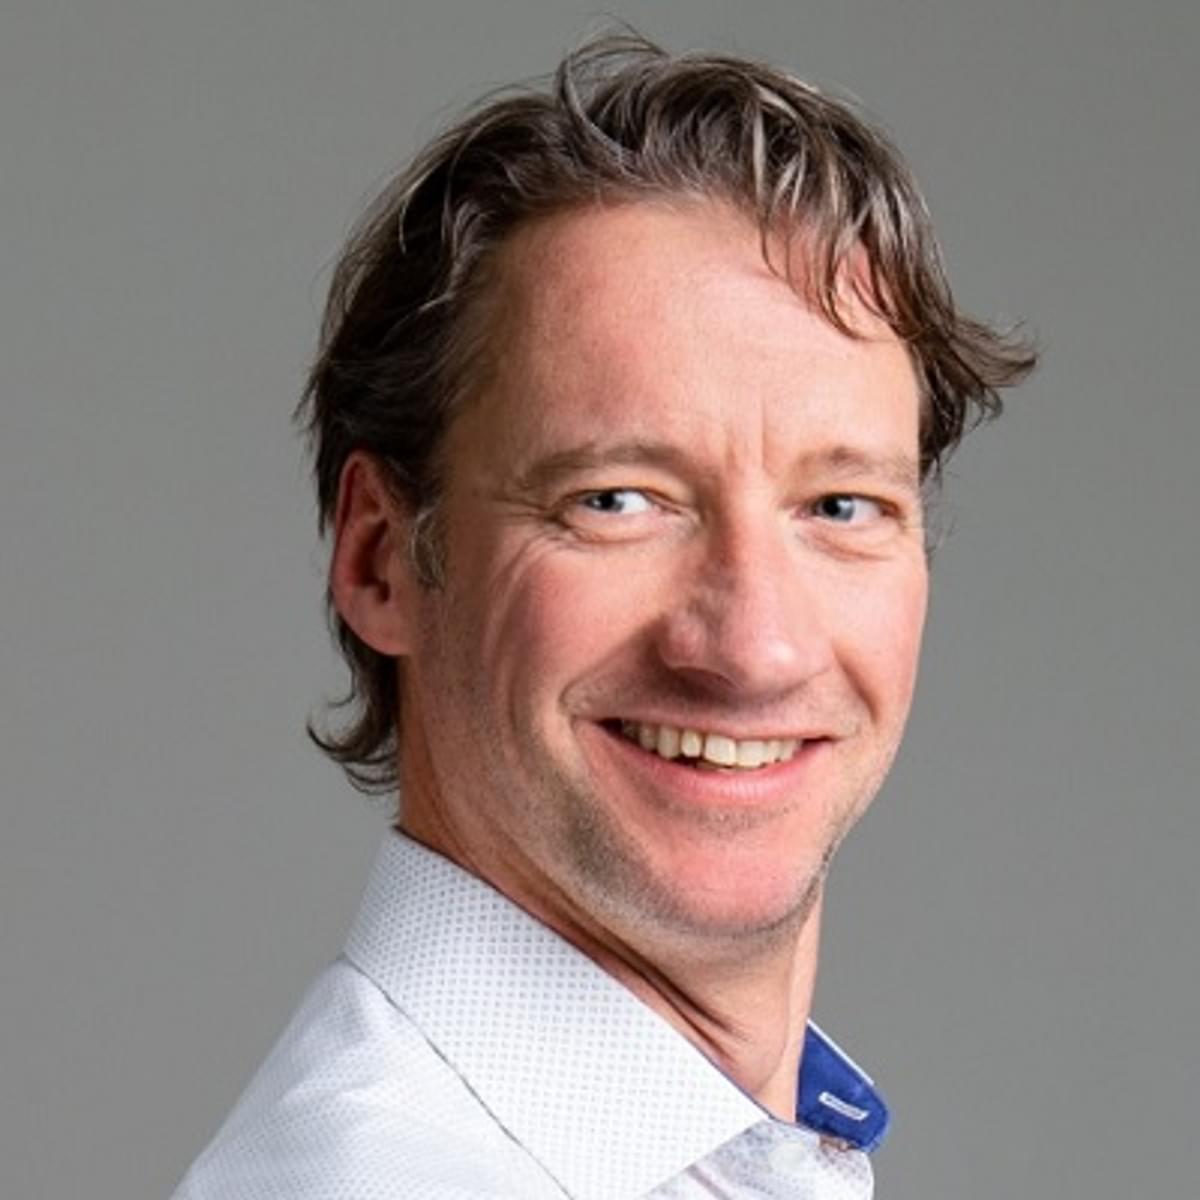 D-Link Benelux stelt Twan Huisman aan als Country Sales Manager image